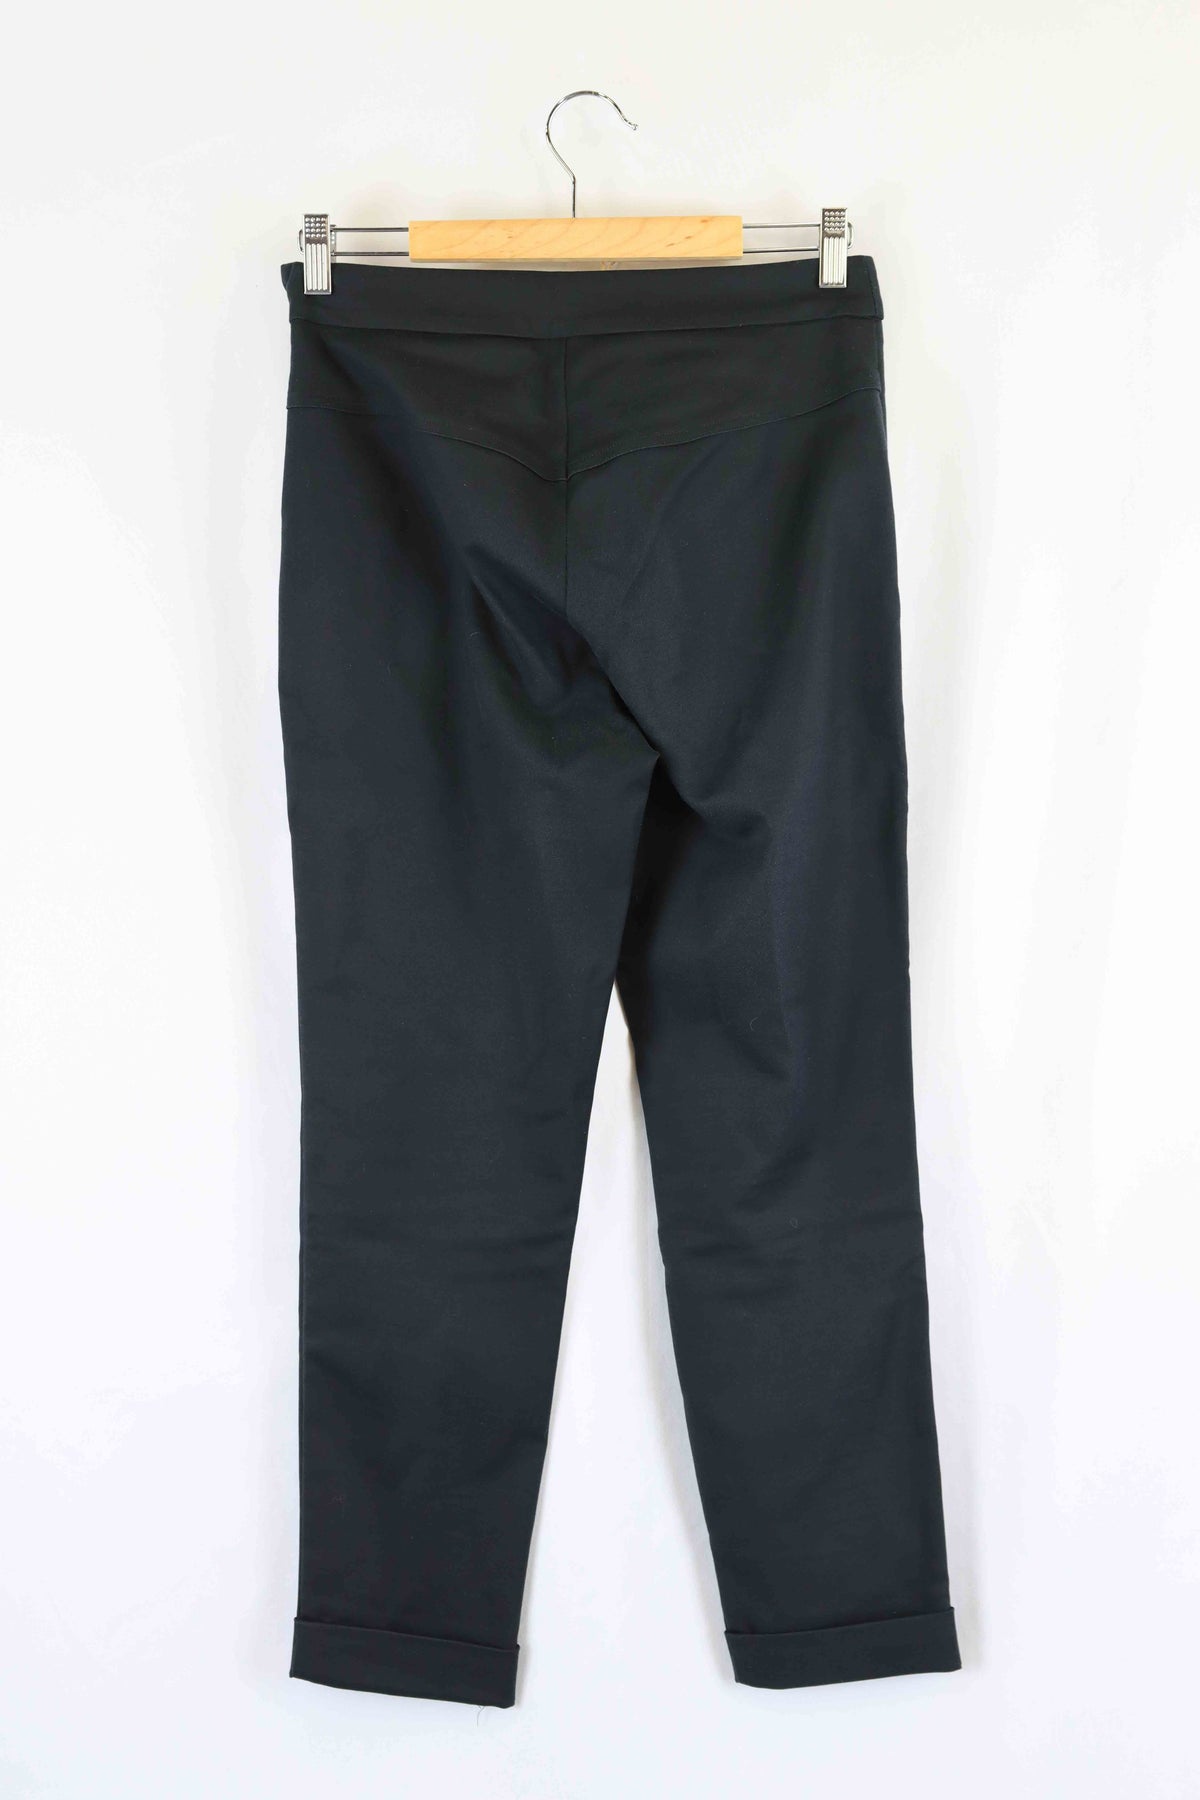 Morrison Black Pants XS